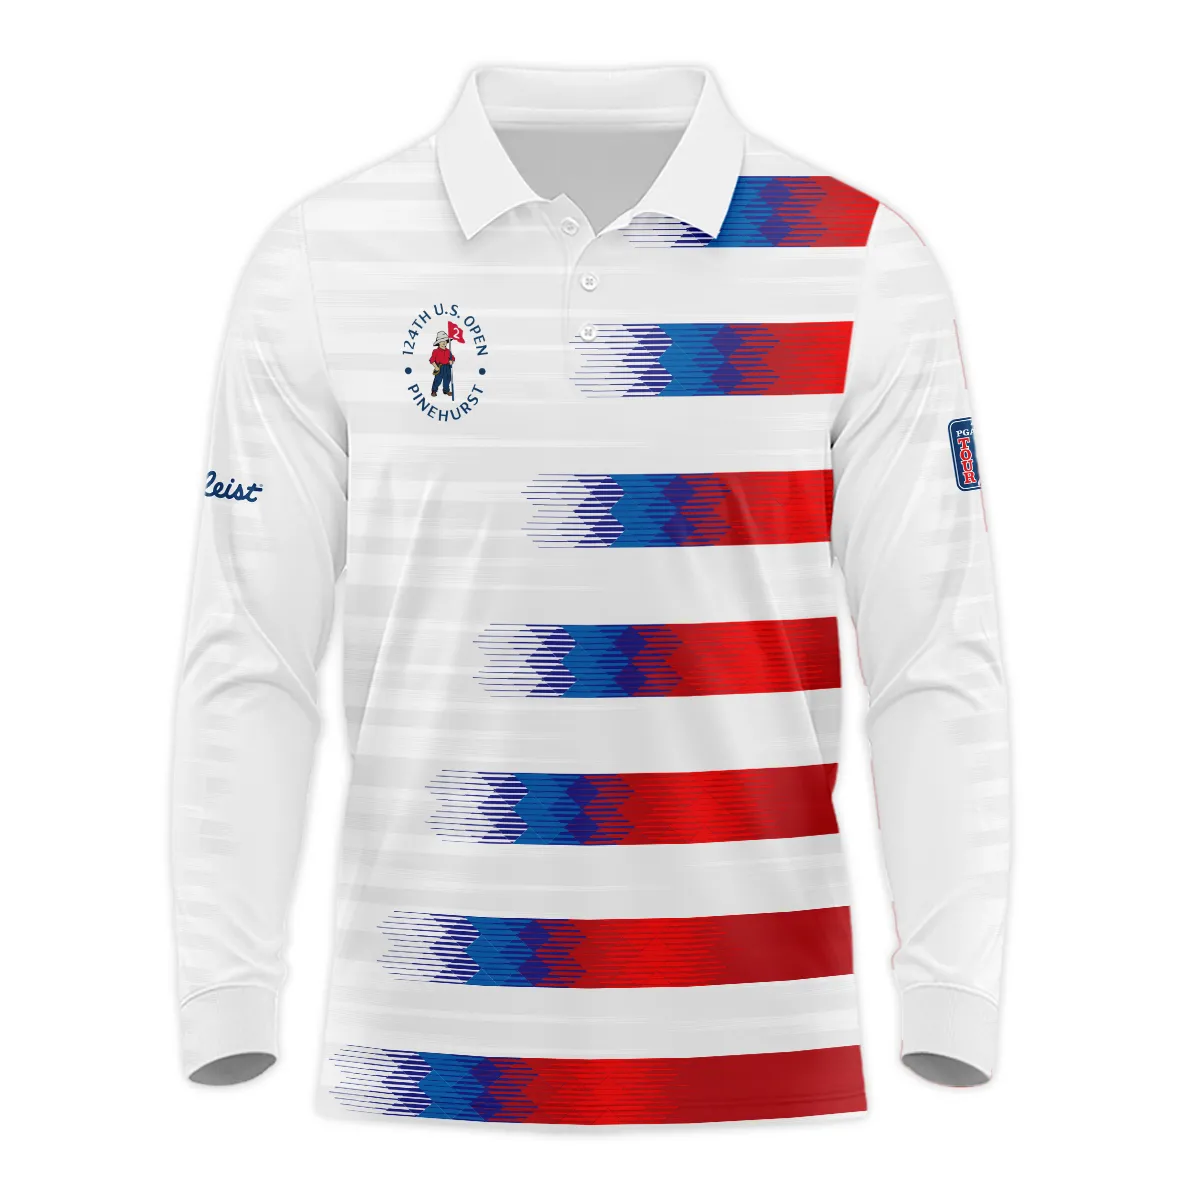 124th U.S. Open Pinehurst Titleist Zipper Hoodie Shirt Sports Blue Red White Pattern All Over Print Zipper Hoodie Shirt